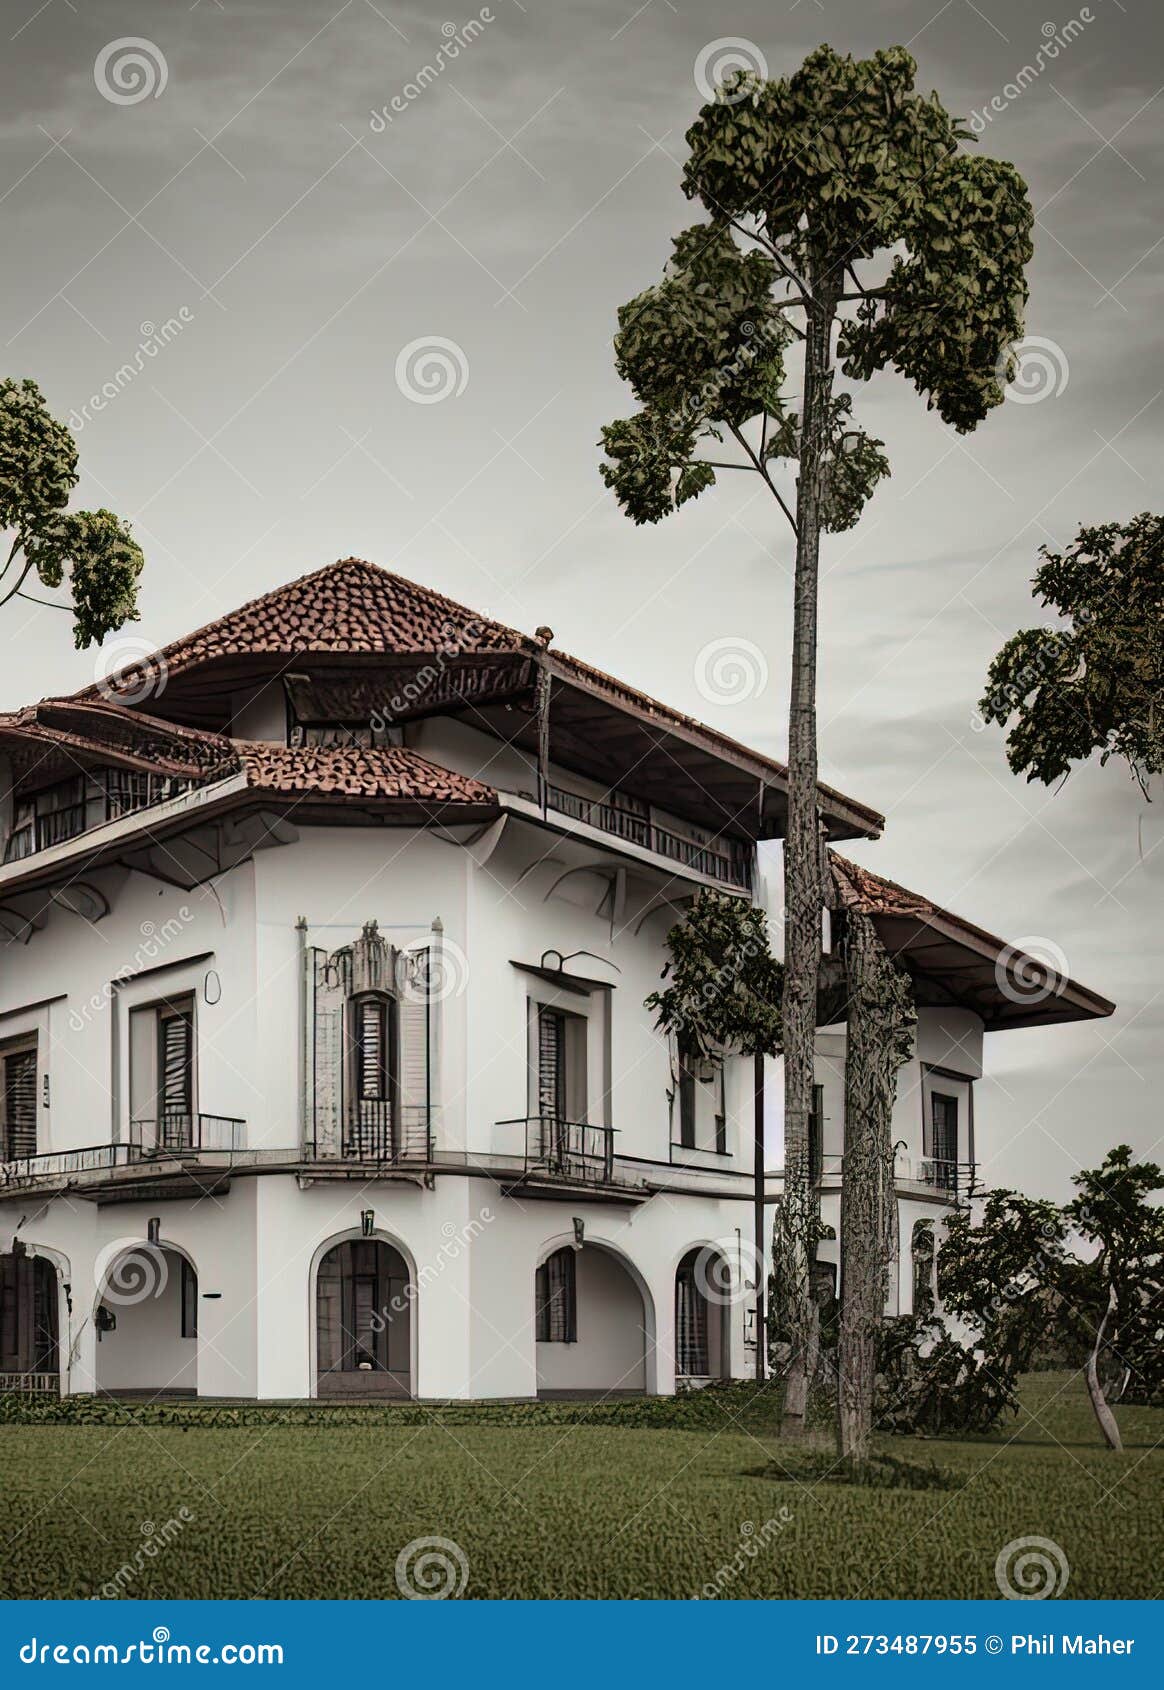 fictional mansion in sete lagoas, minas gerais, brazil.